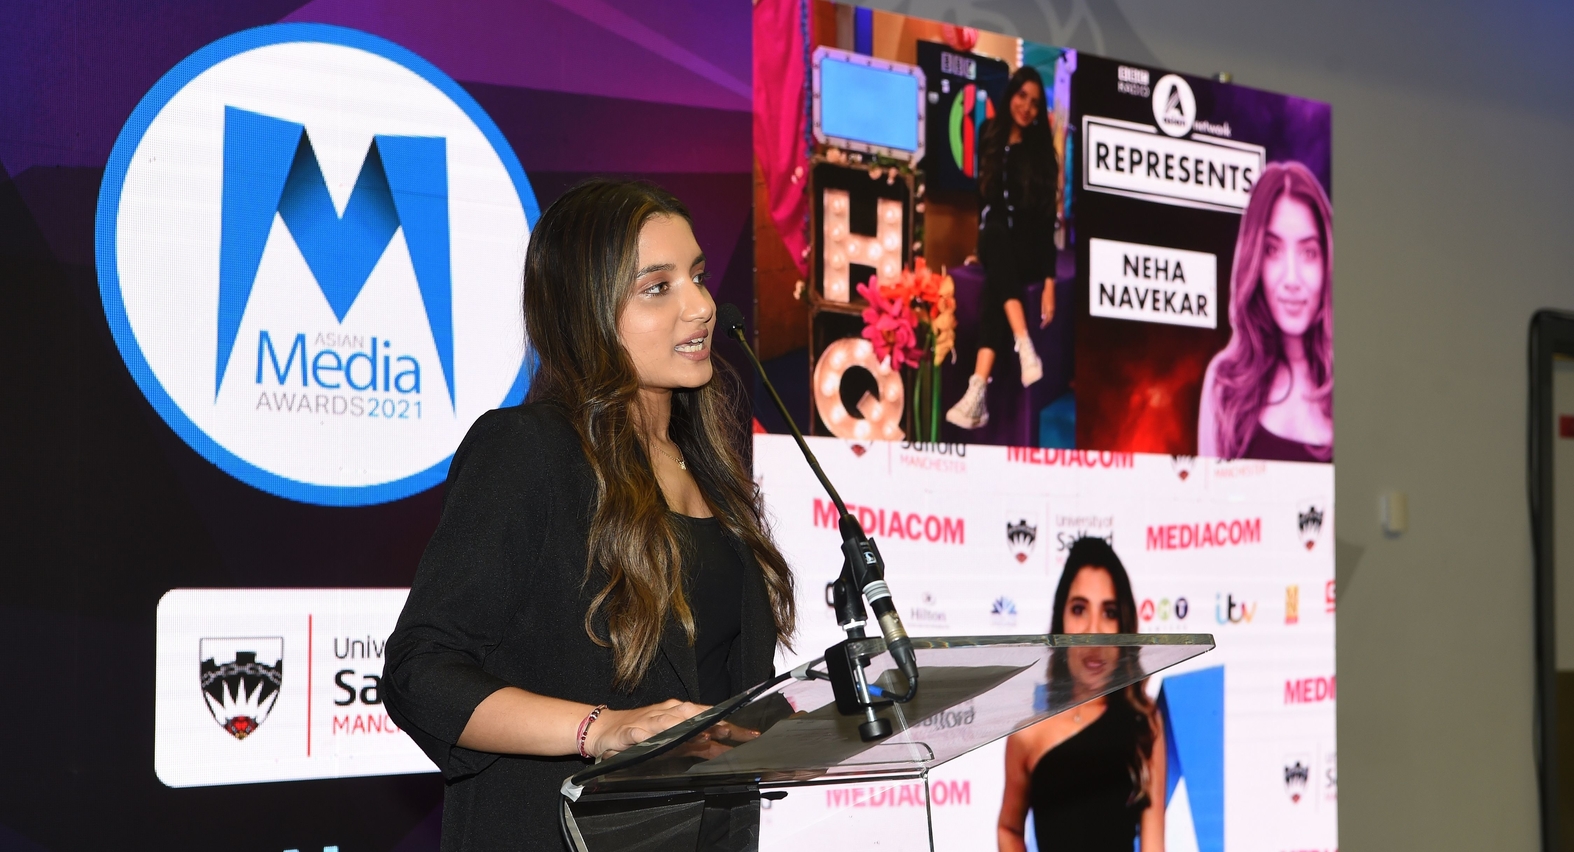 Neha Navekar presenting at the Asian Media Awards 2021